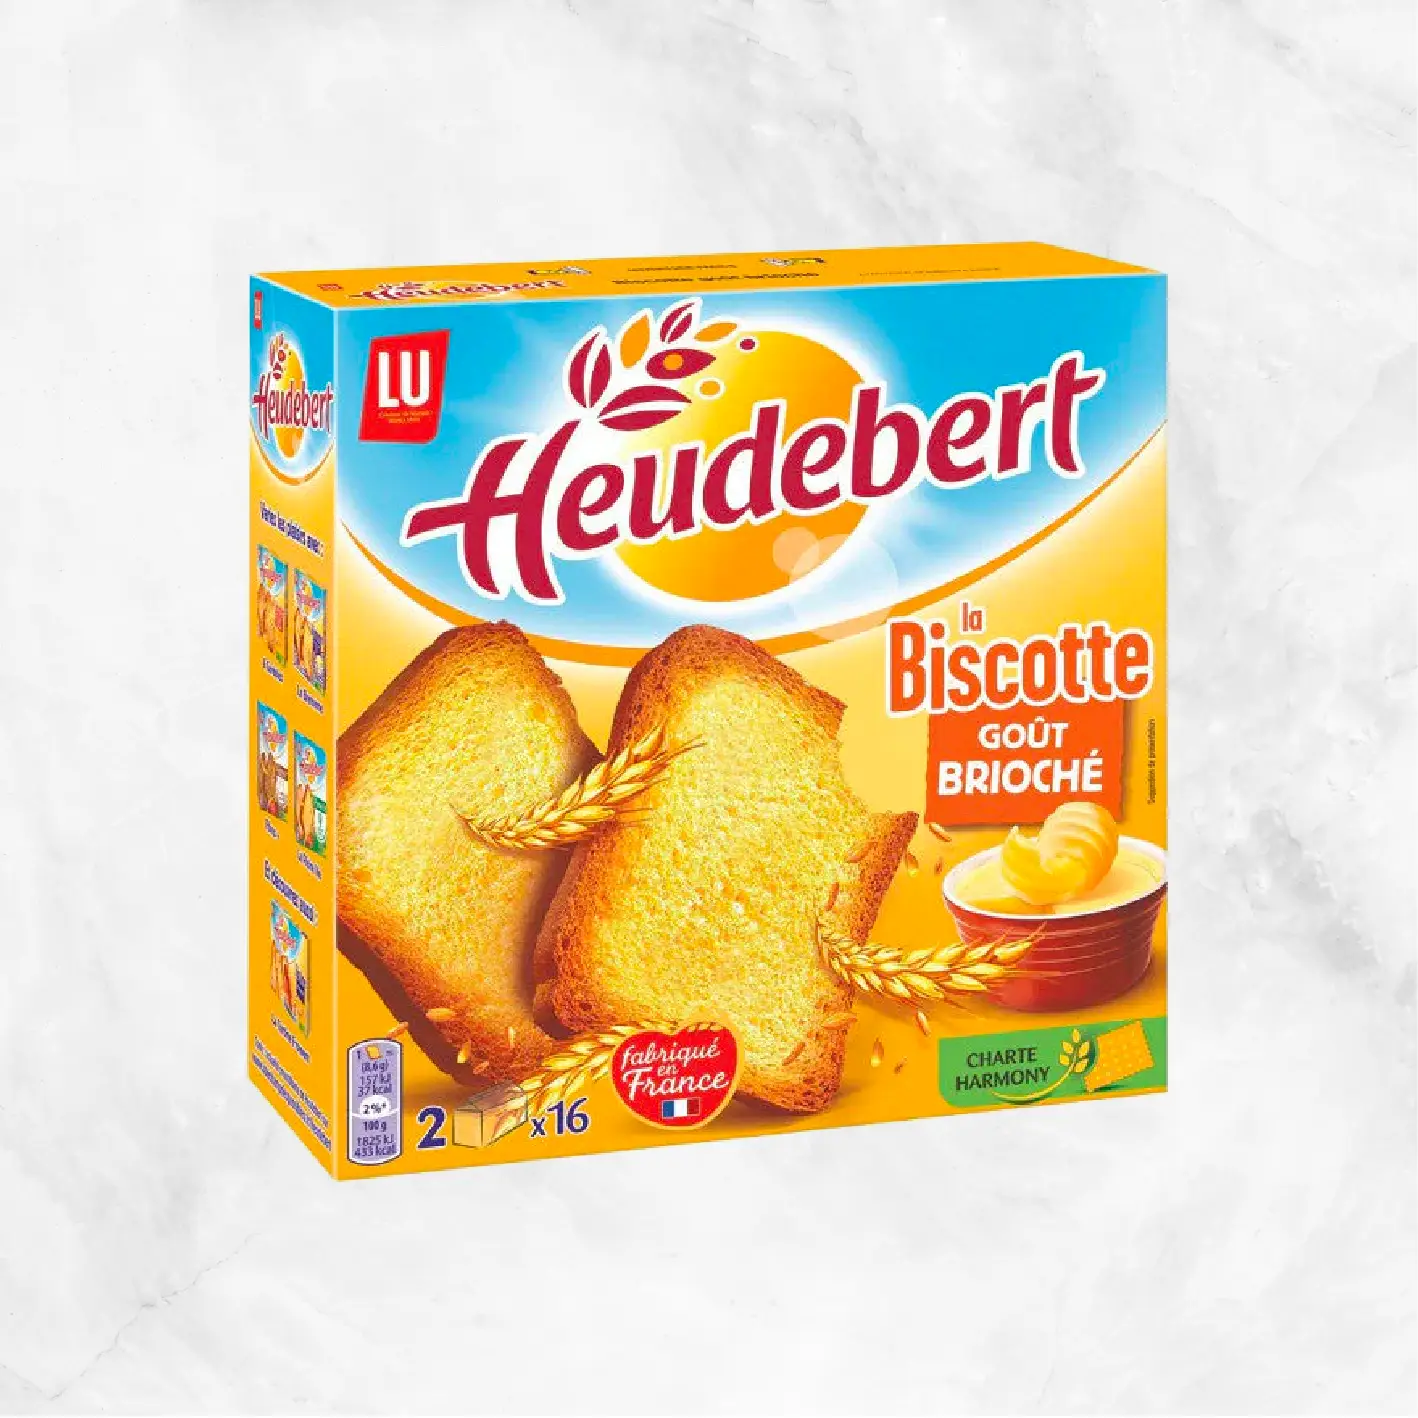 Heudebert Biscottes Brioche Delivery